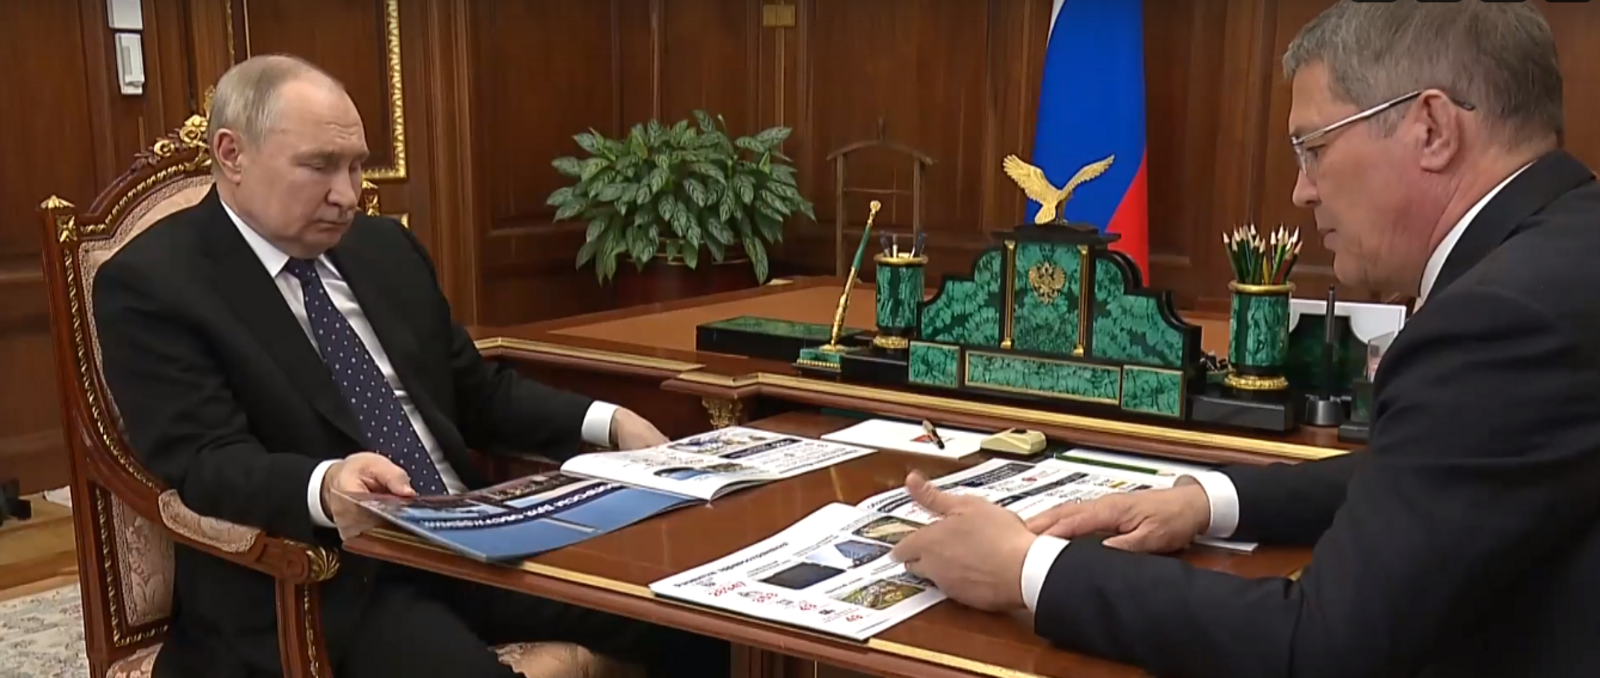 Общественные деятели оценили встречу главы Башкирии с президентом России